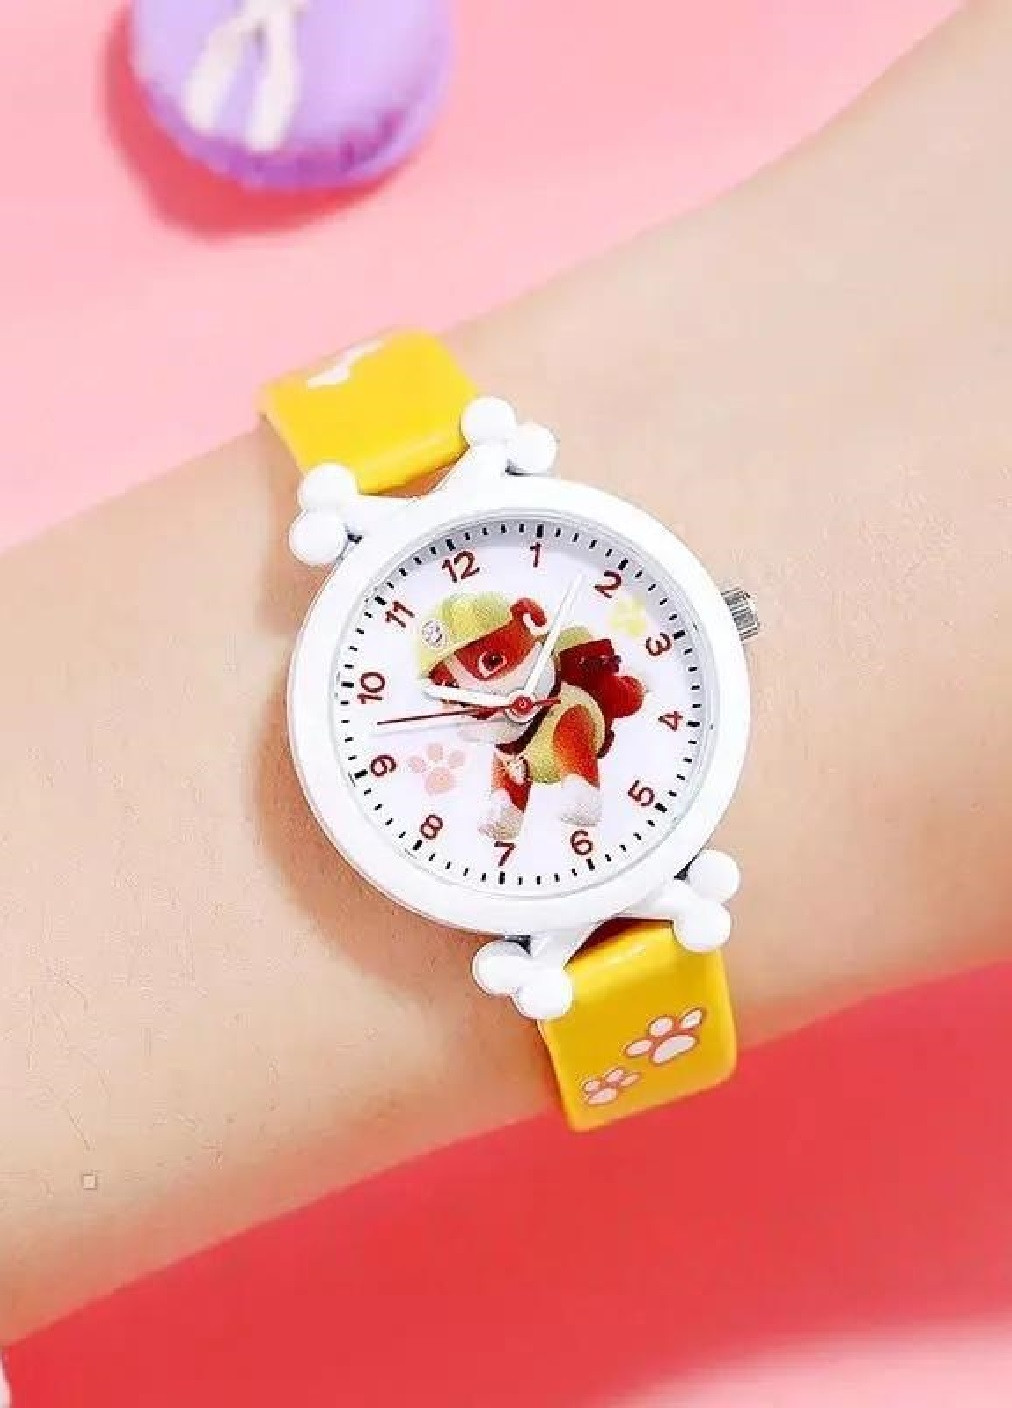 Дитячий наручний годинник для дітей дівчаток хлопчиків із персонажем Здоровань щенячий патруль (476072-Prob) Жовтий Unbranded (276249320)